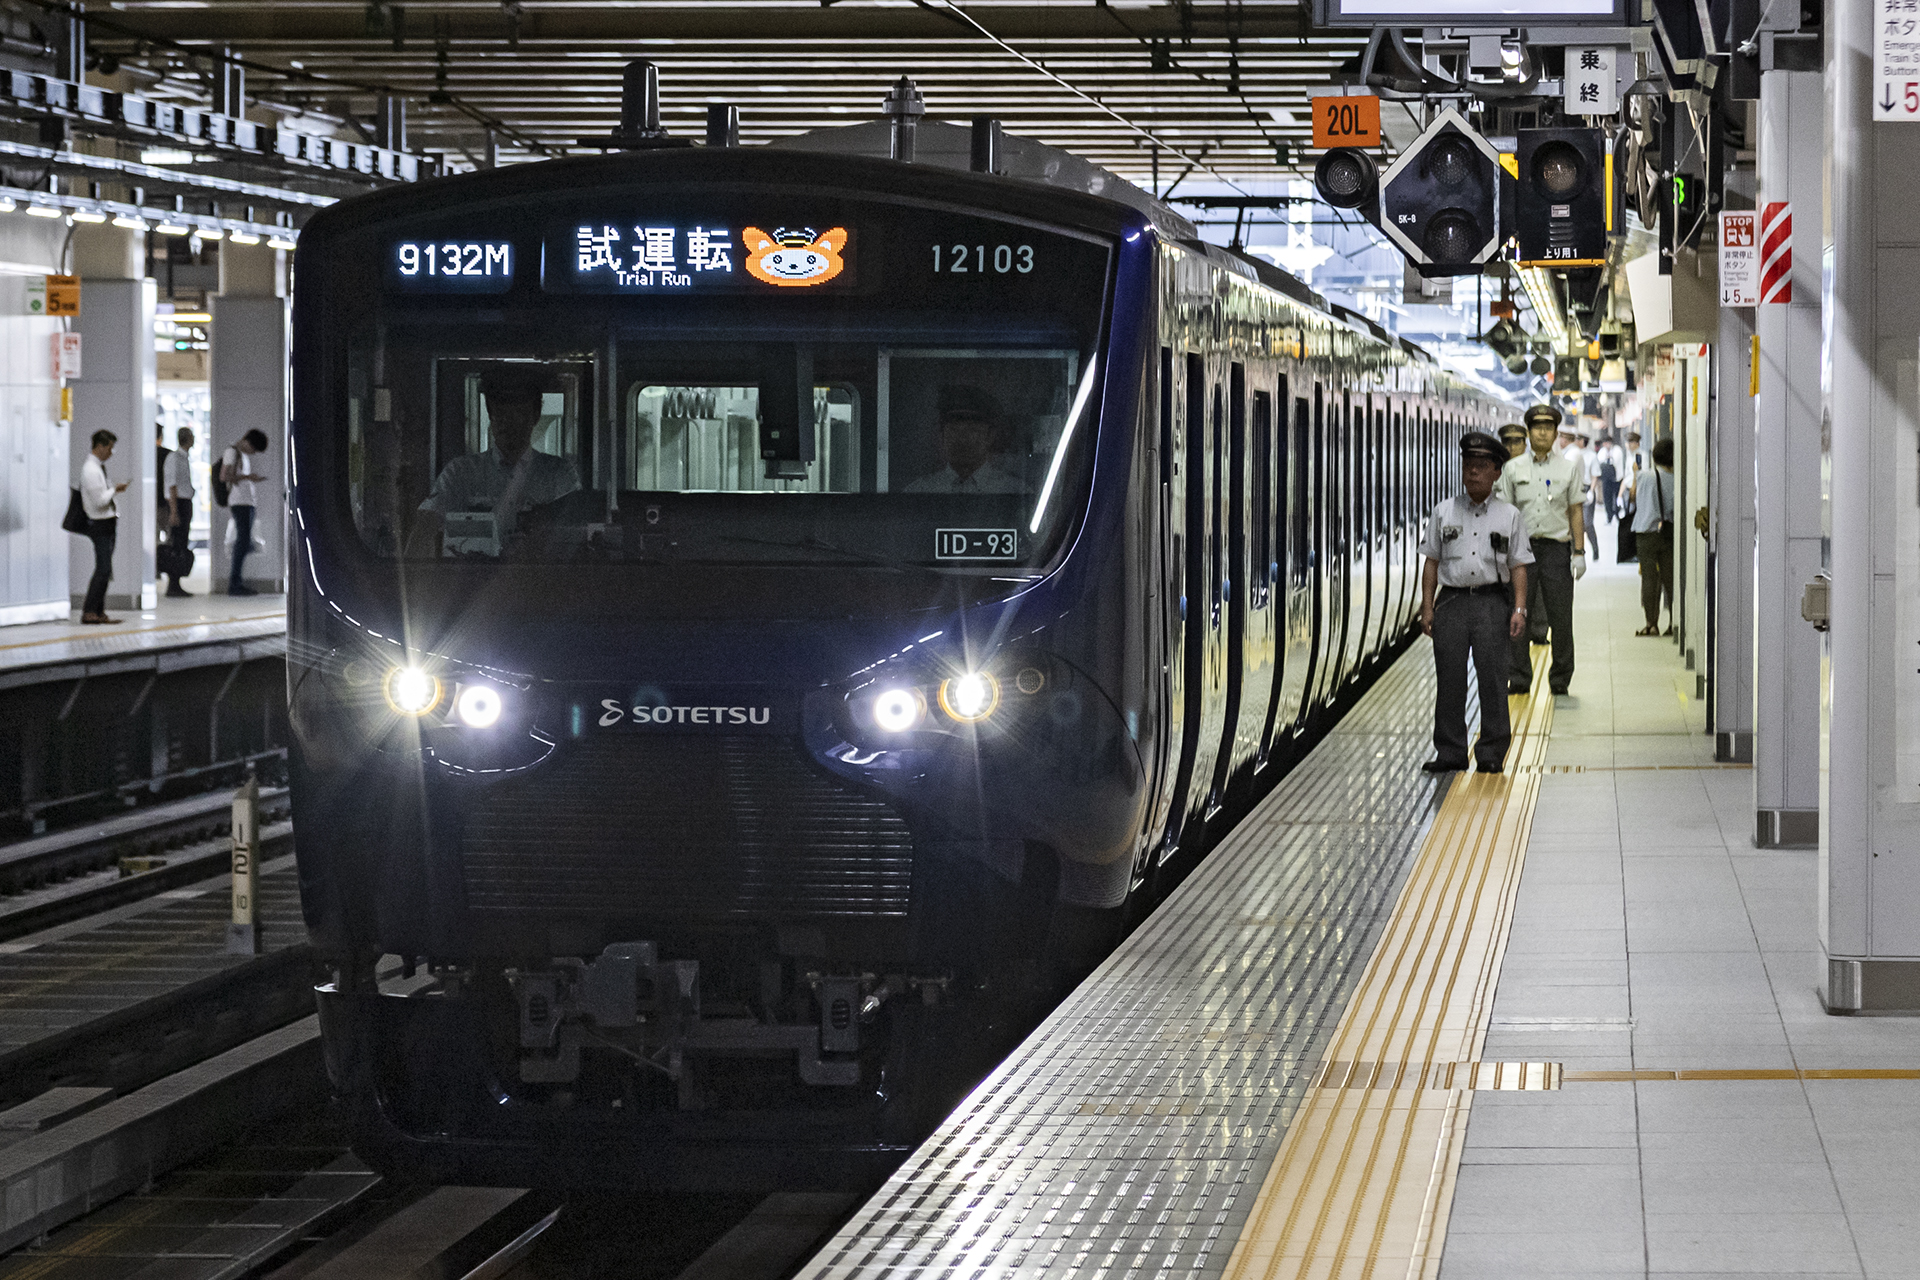 相鉄 100系 が新宿駅に初乗り入れ 11月30日開業の相鉄 Jr相互直通線に向けた試運転 トラベル Watch